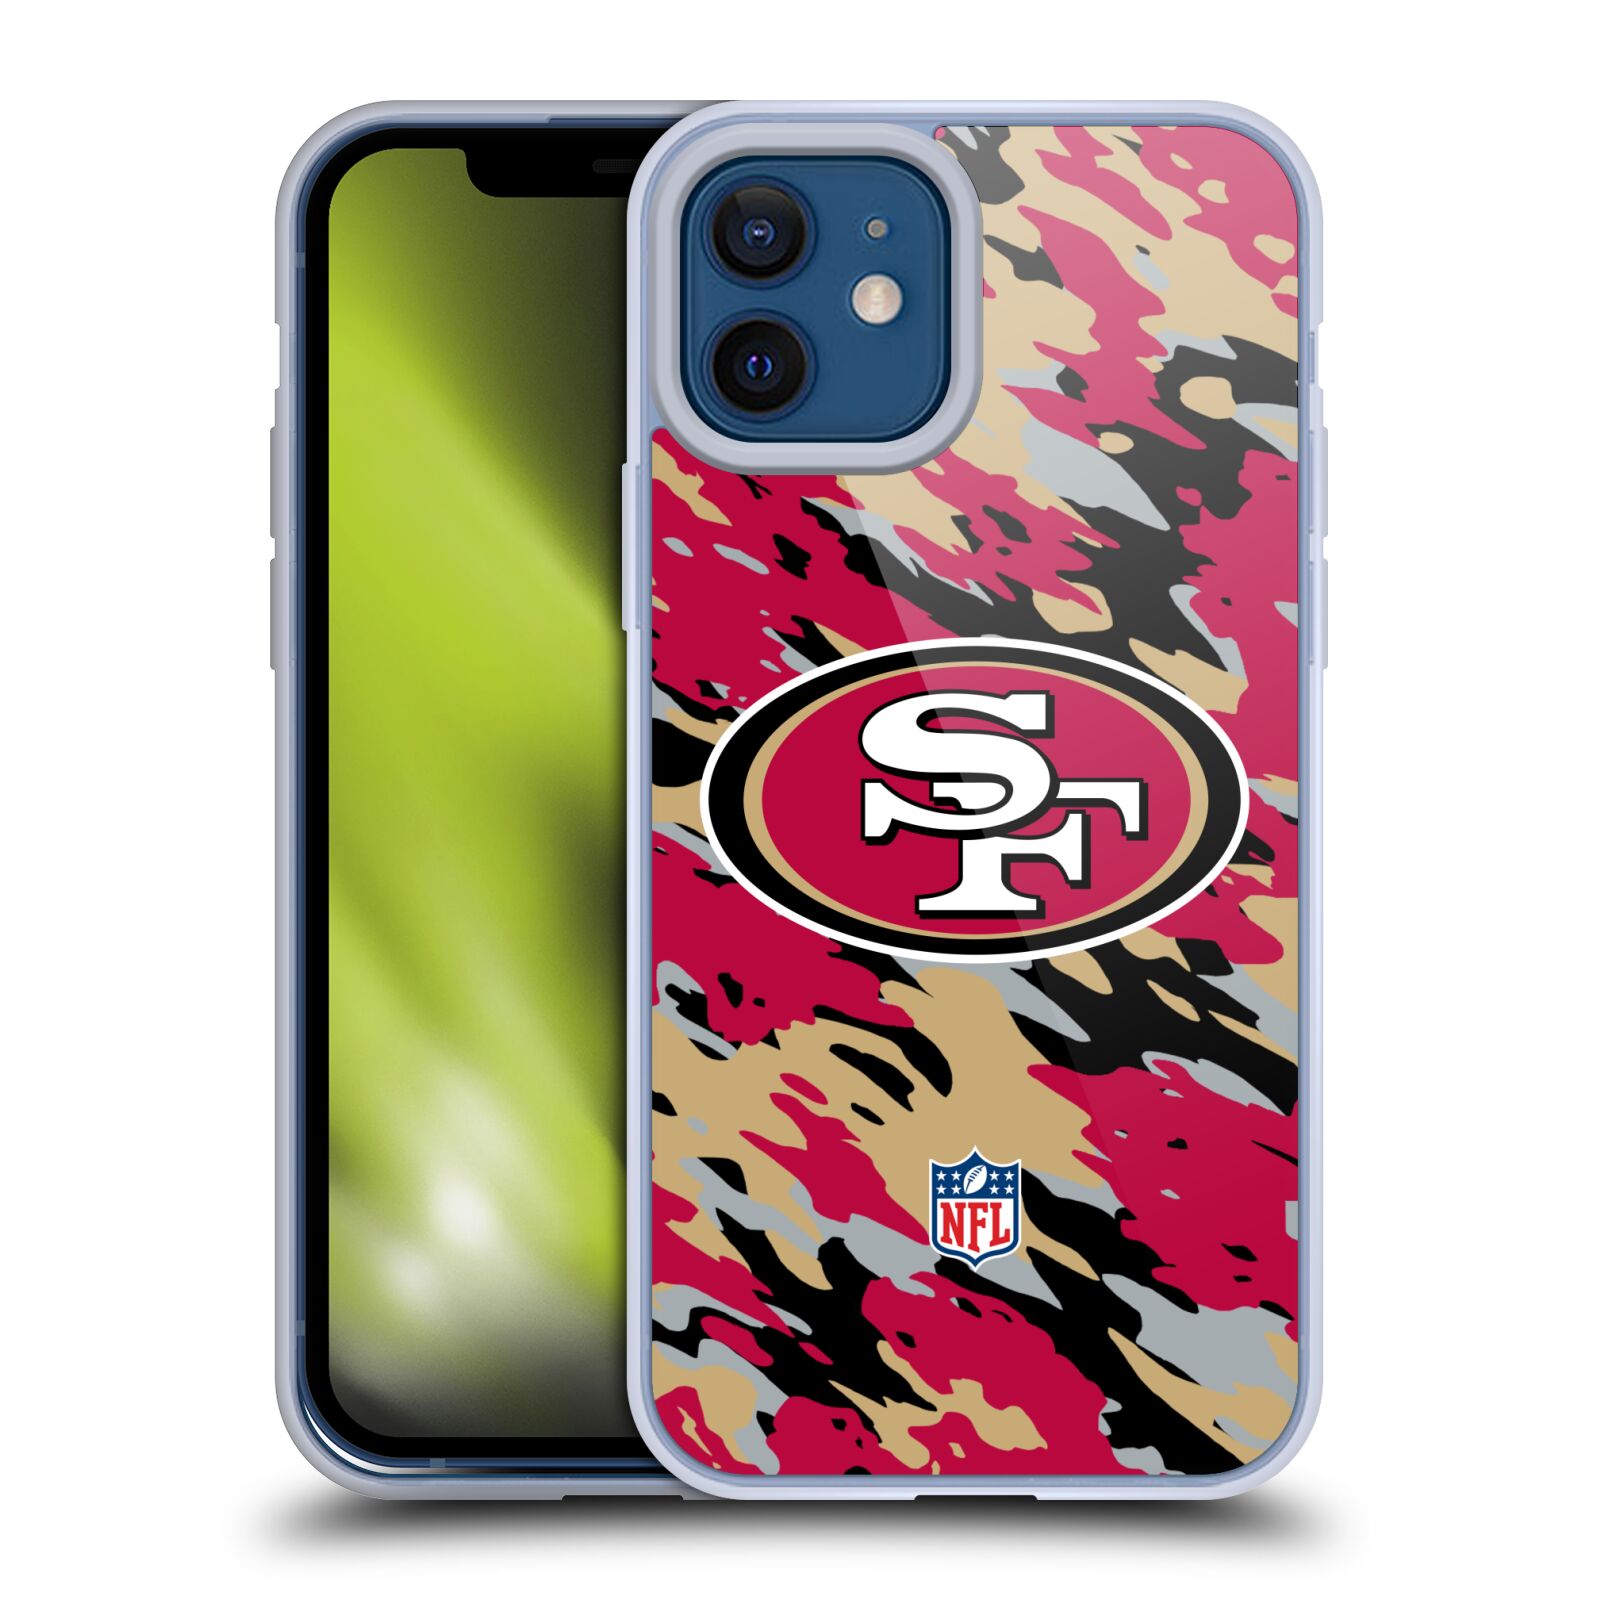 OFFICIAL NFL SAN FRANCISCO 49ERS LOGO SOFT GEL CASE FOR APPLE iPHONE